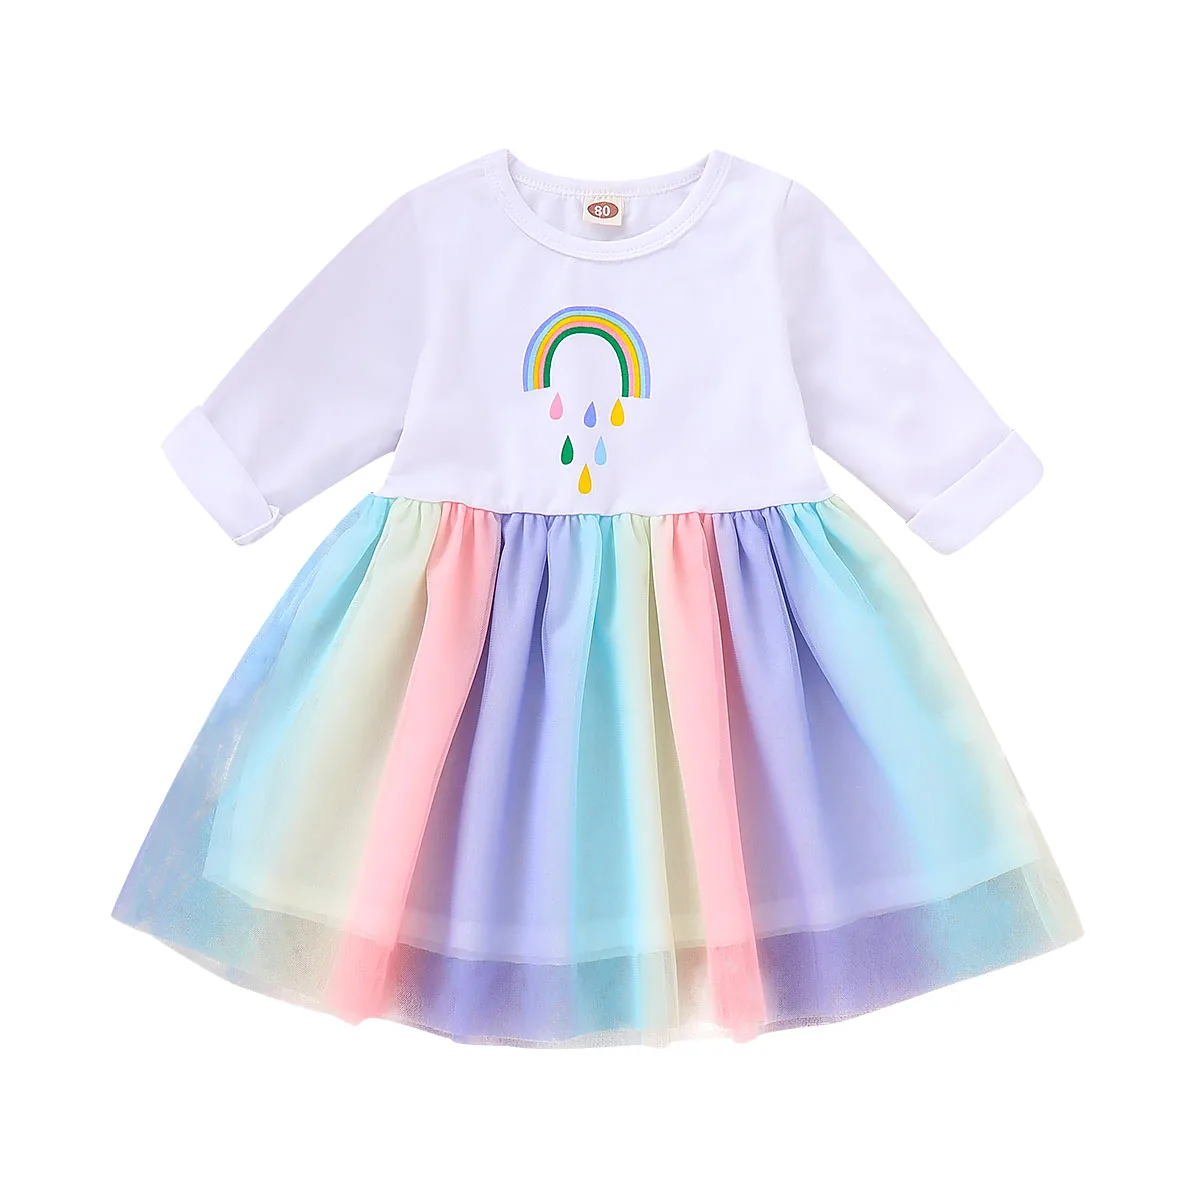 Платье принцессы для маленьких детей Осеннее платье для девочек на возраст от 0 до 18 месяцев, с принтом радуги, кружевное платье с длинными рукавами Длина по колено, пэчворк, платье-пачка